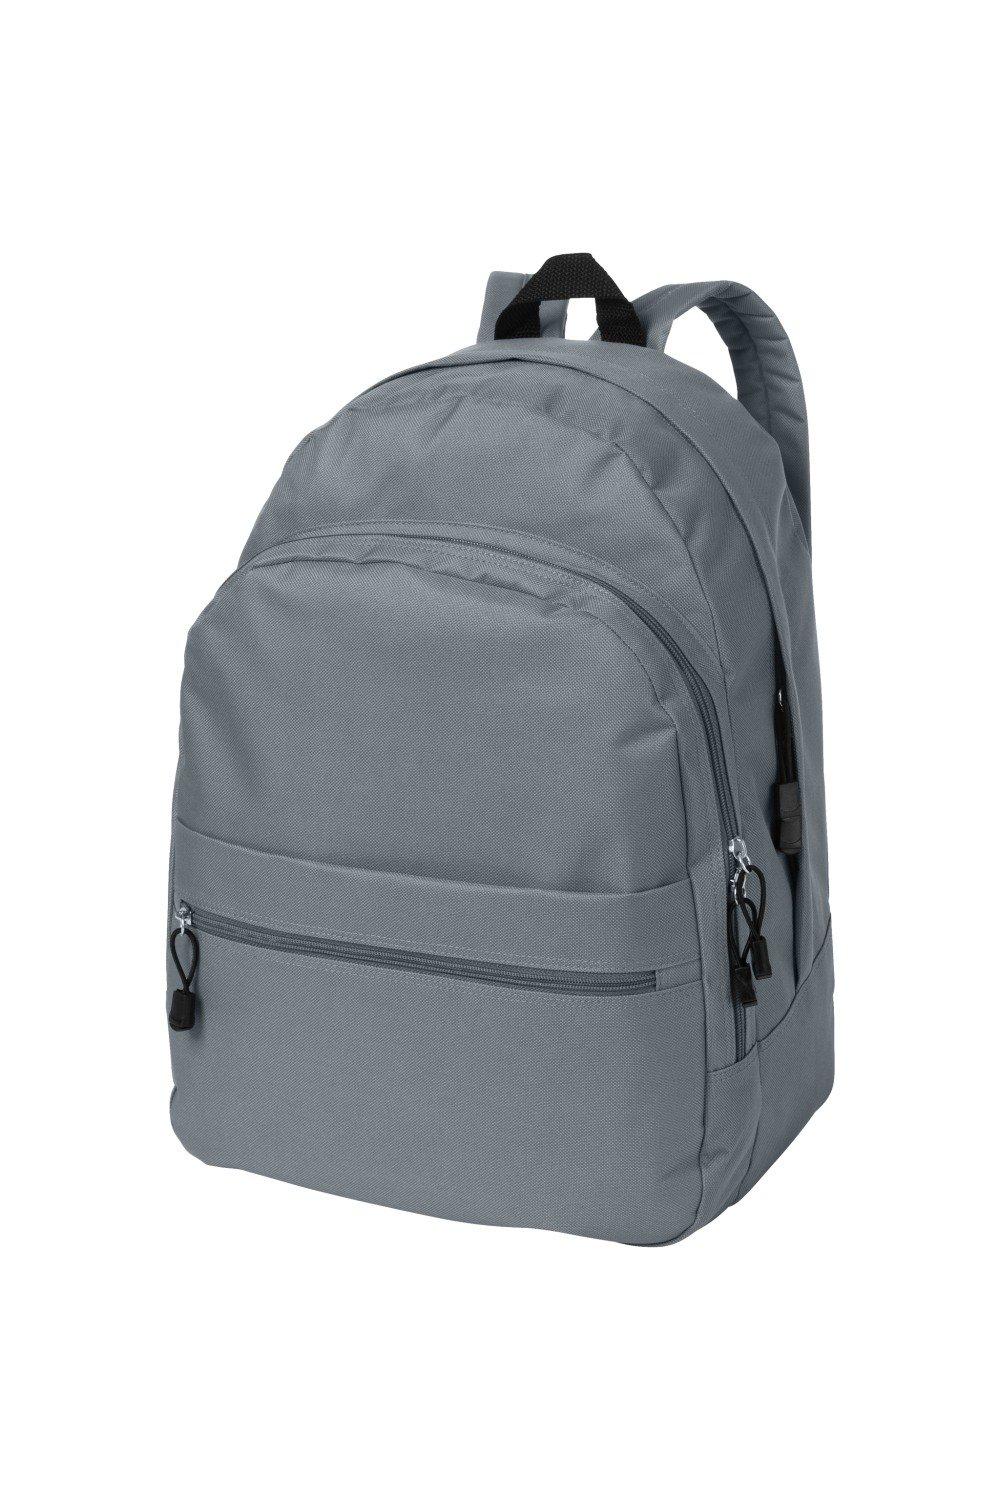 Трендовый рюкзак Bullet, серый универсальный сетчатый рюкзак унисекс с передним карманом оранжевый камуфляж